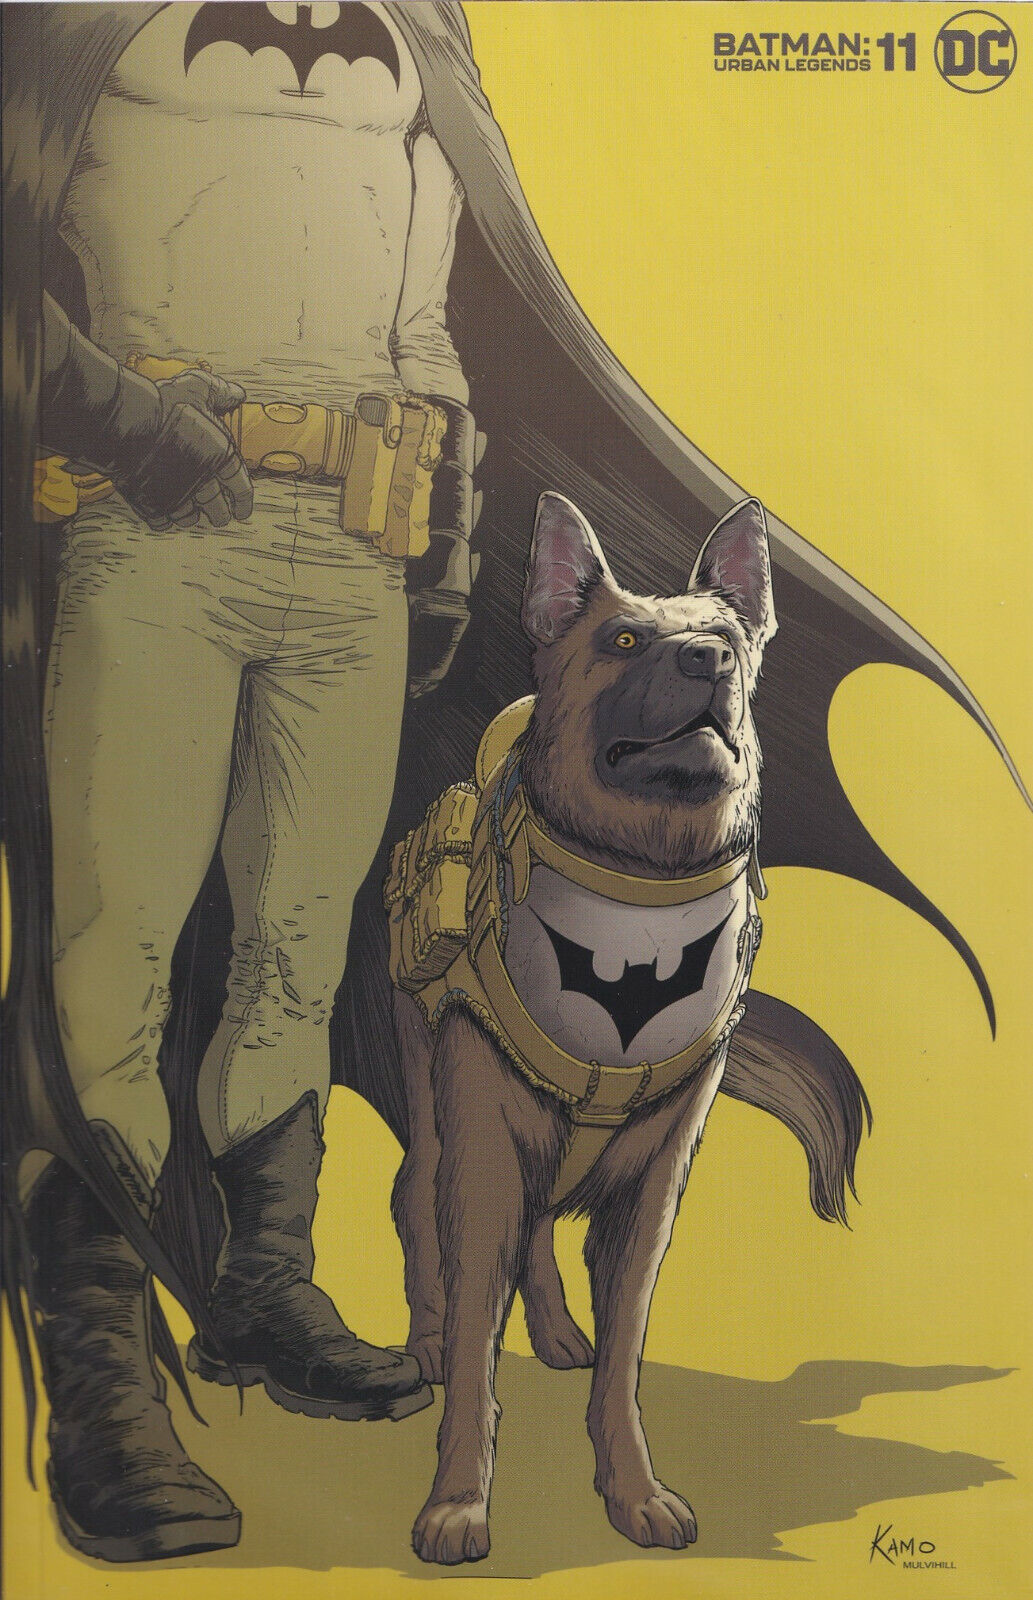 BATMAN: URBAN LEGENDS #11 (KARL MOSTERT VARIANT) COMIC BOOK ~ DC Comics